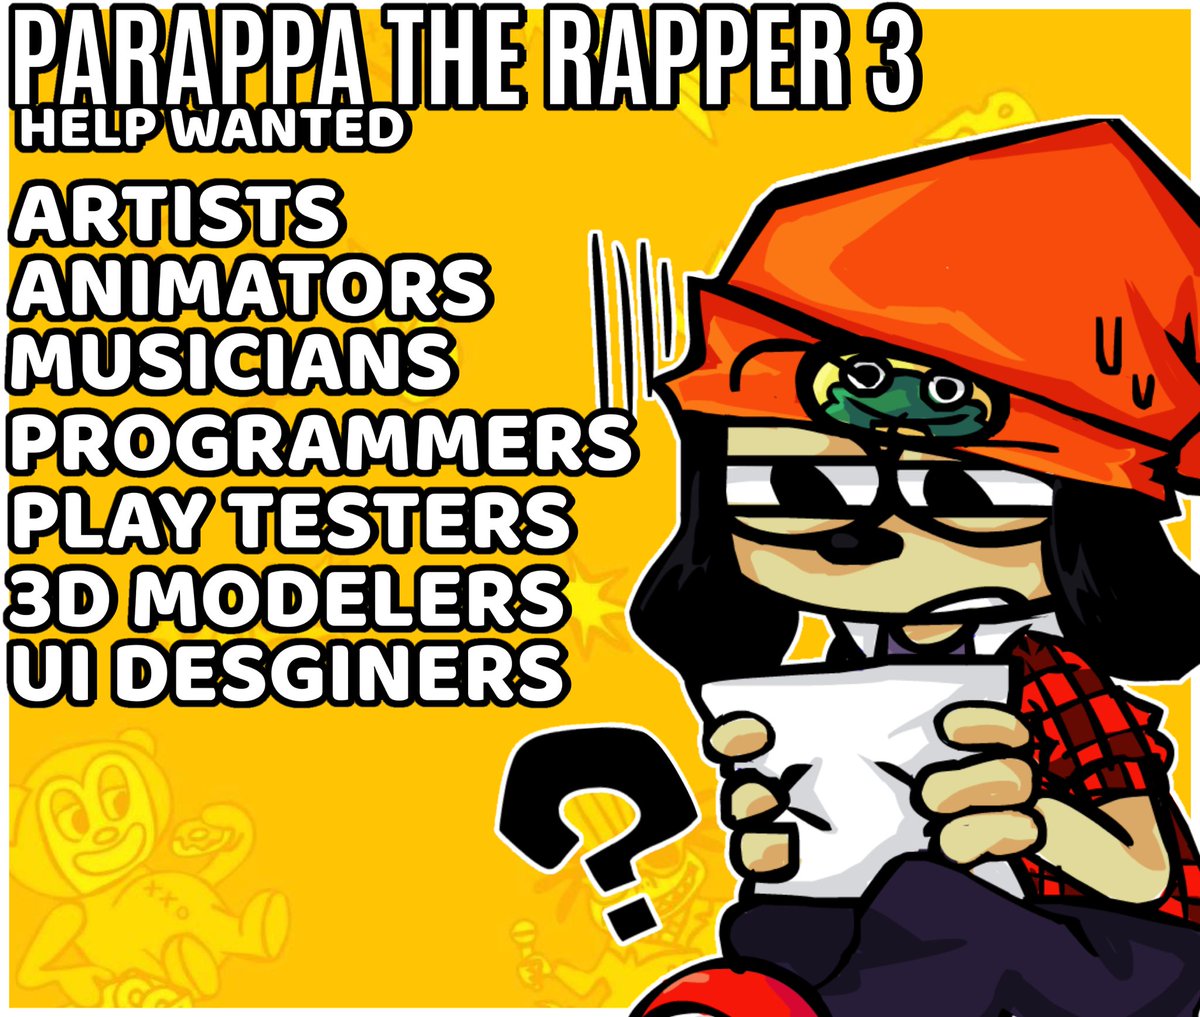 Parappa the rapper 3